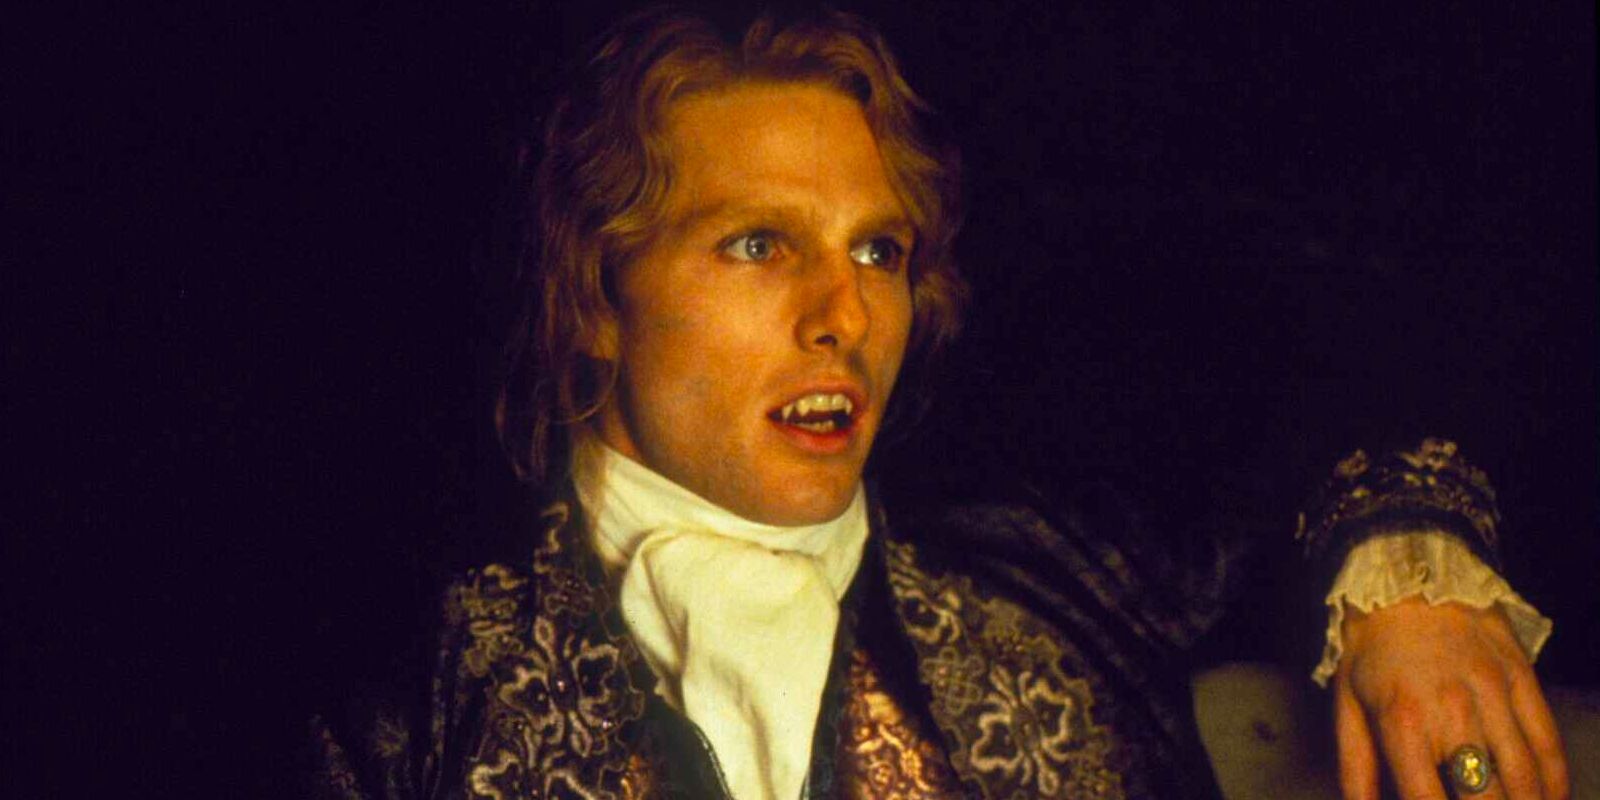 Lestat de Lioncourt ، مصاص دماء عمره قرون ، يجلس في غرفة مظلمة في ملابس فاخرة من القرن الثامن عشر.